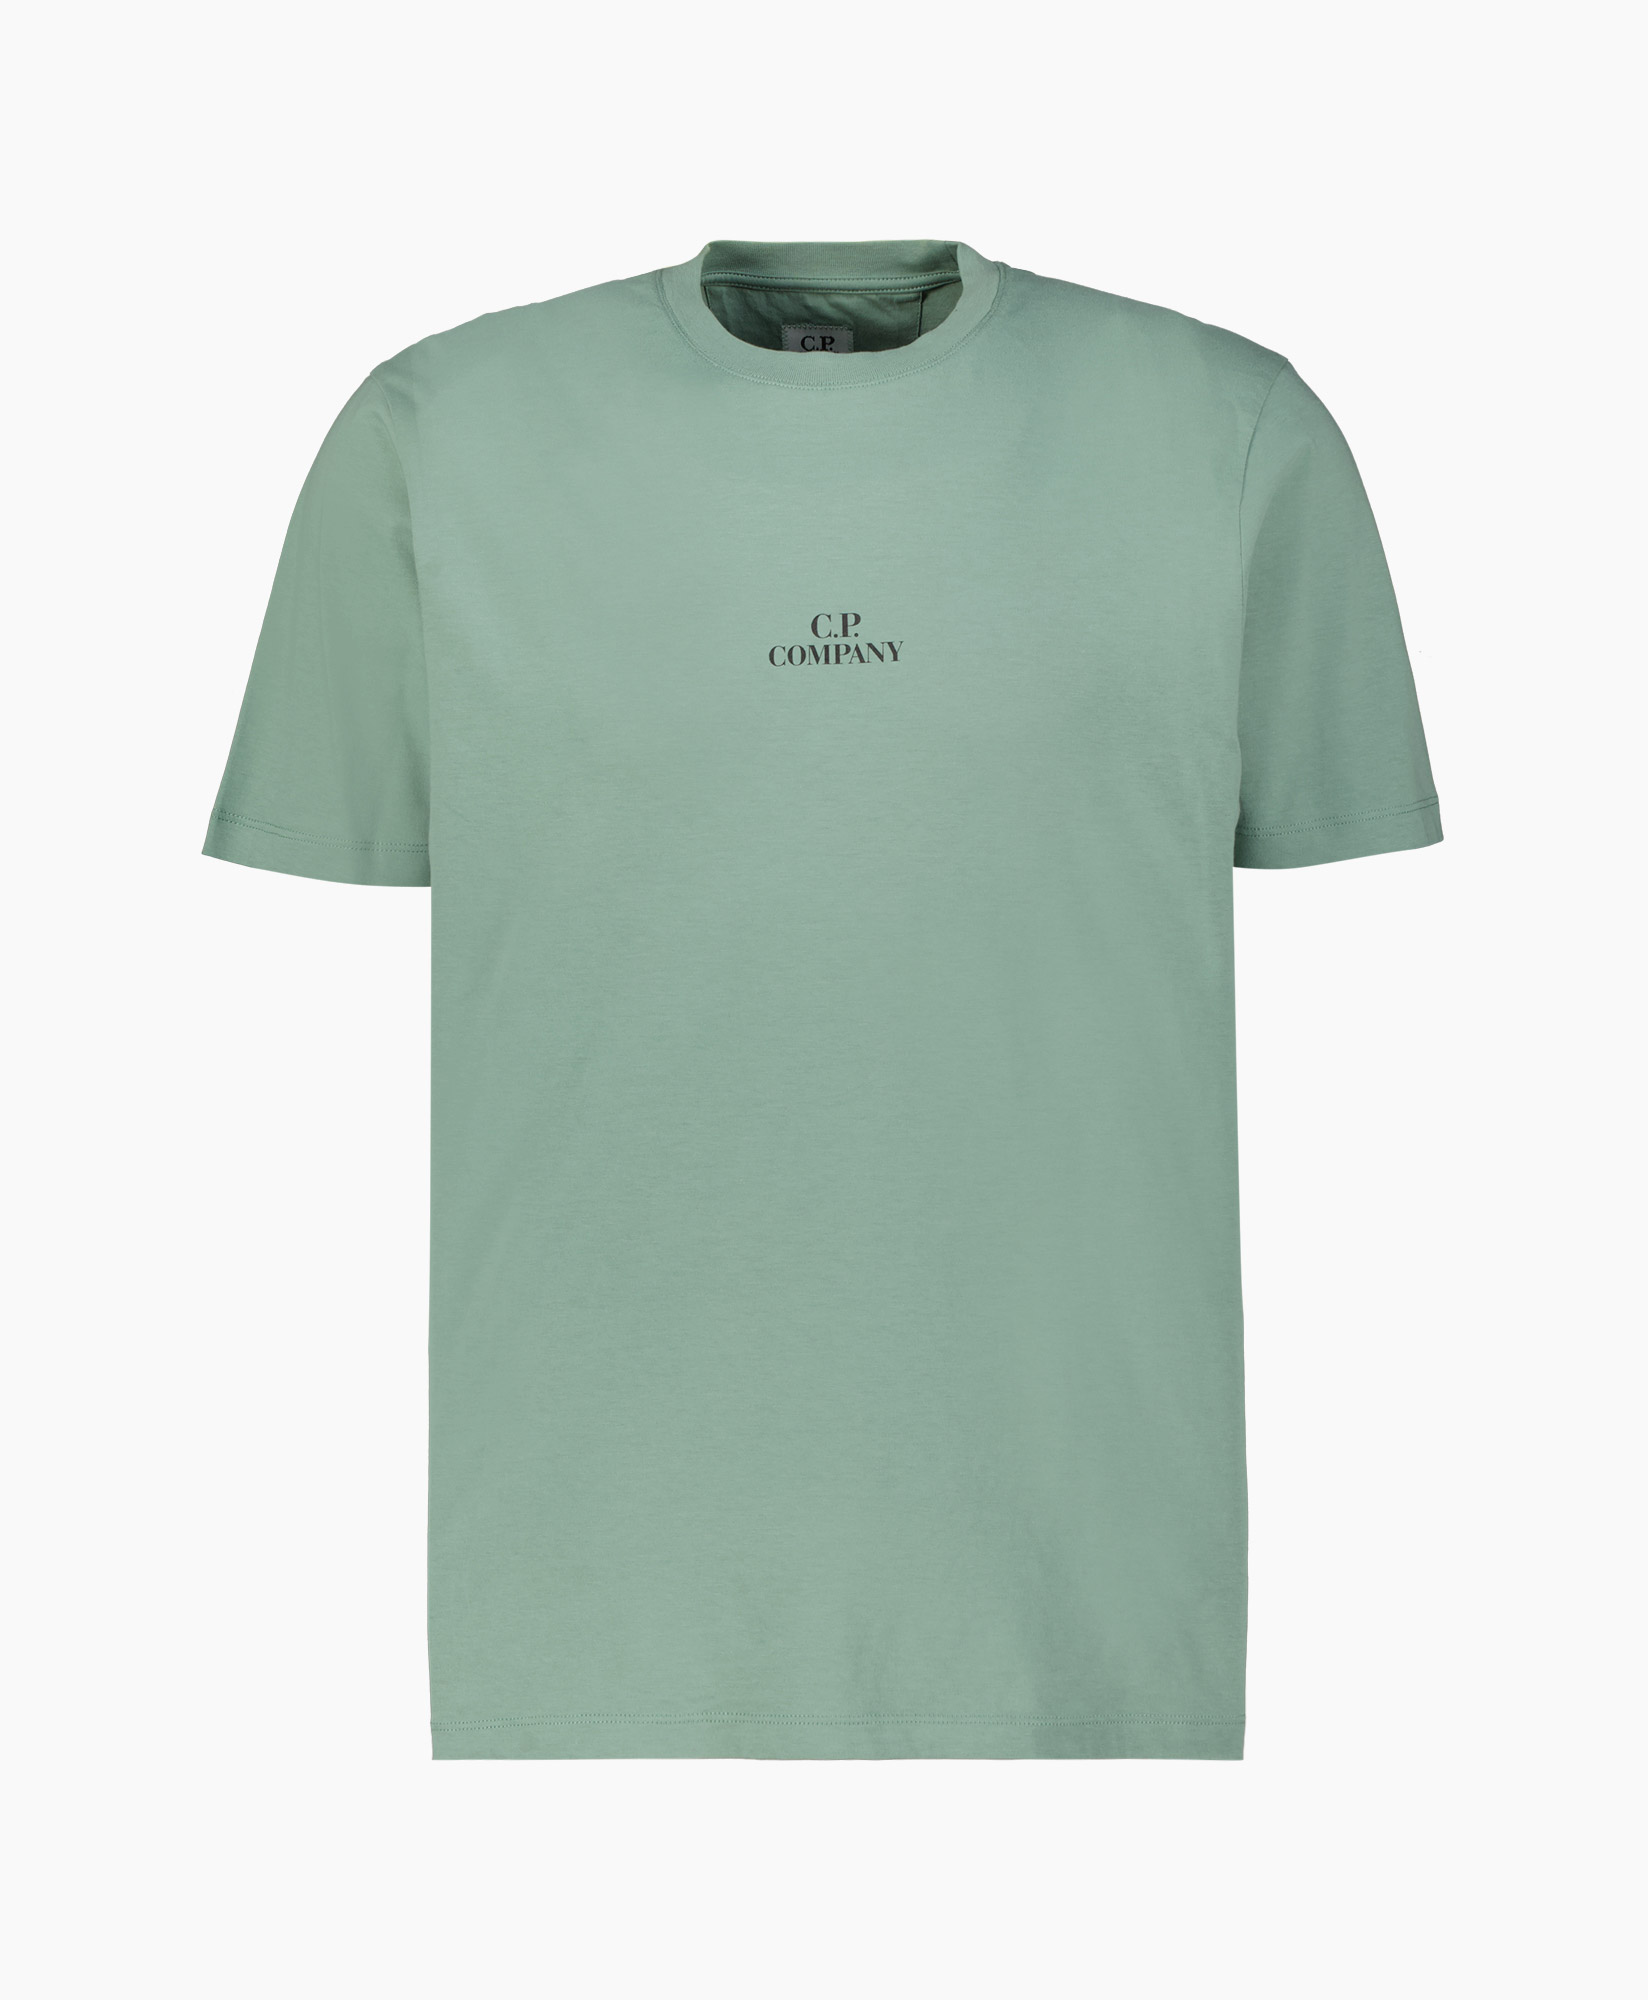 T-shirt Jersey Graphic licht groen